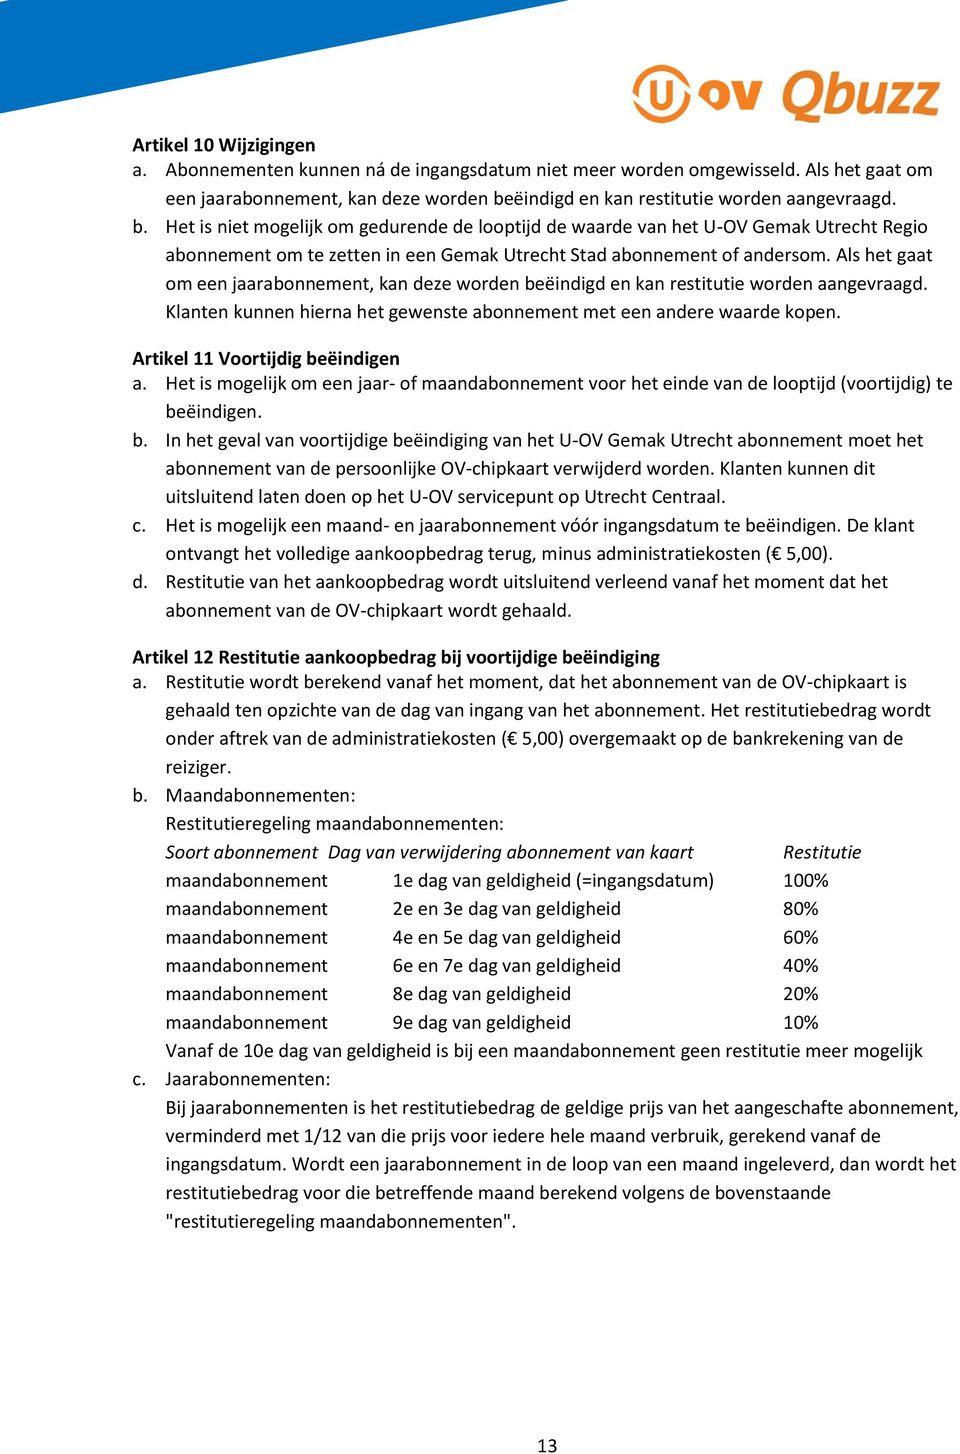 Het is niet mogelijk om gedurende de looptijd de waarde van het U-OV Gemak Utrecht Regio abonnement om te zetten in een Gemak Utrecht Stad abonnement of andersom.